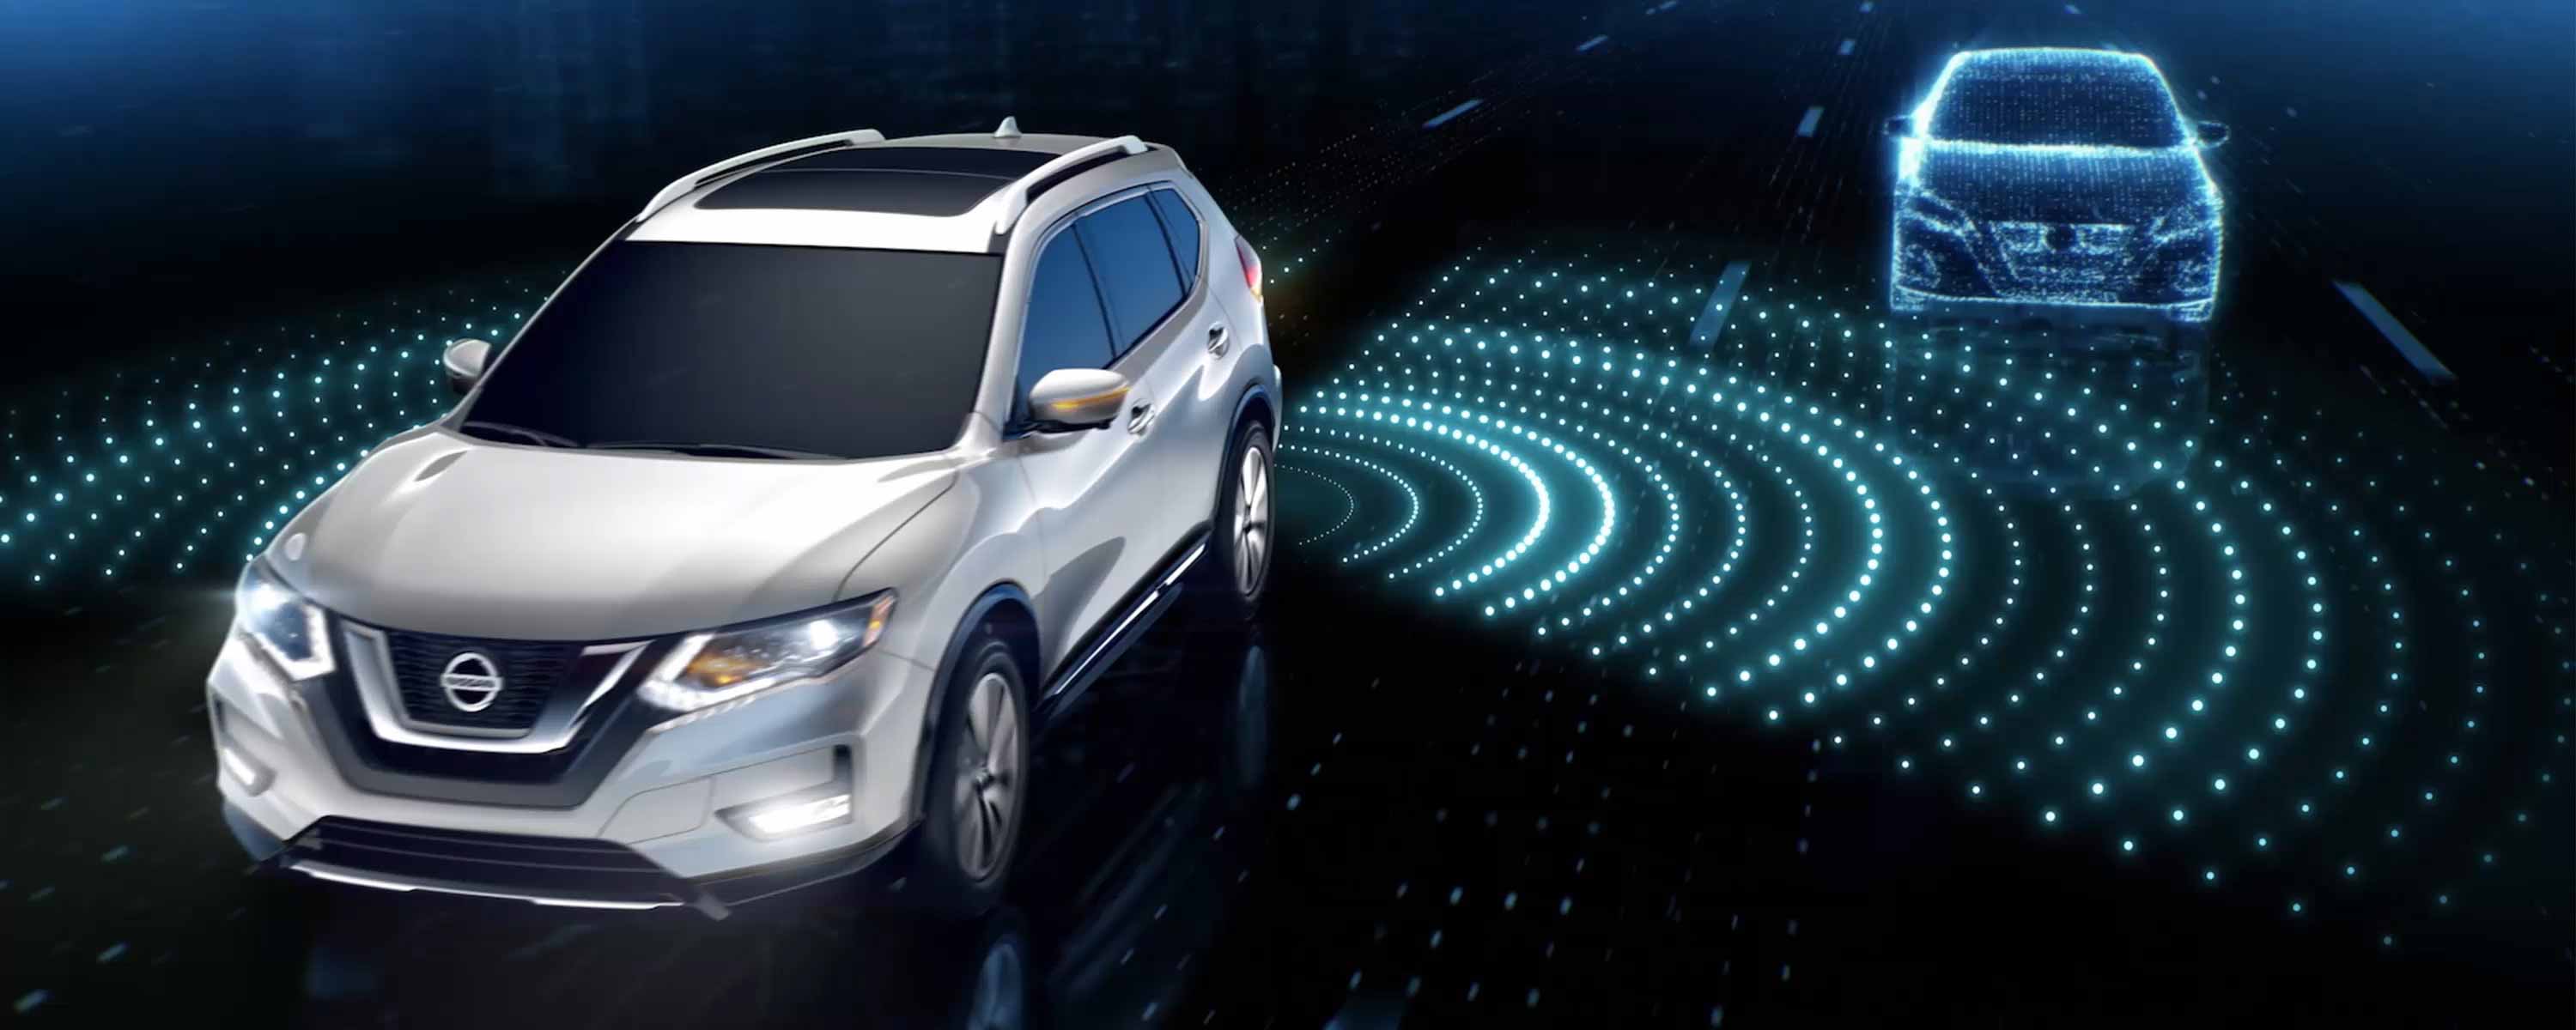 Nissan Akıllı Sürüş videosu